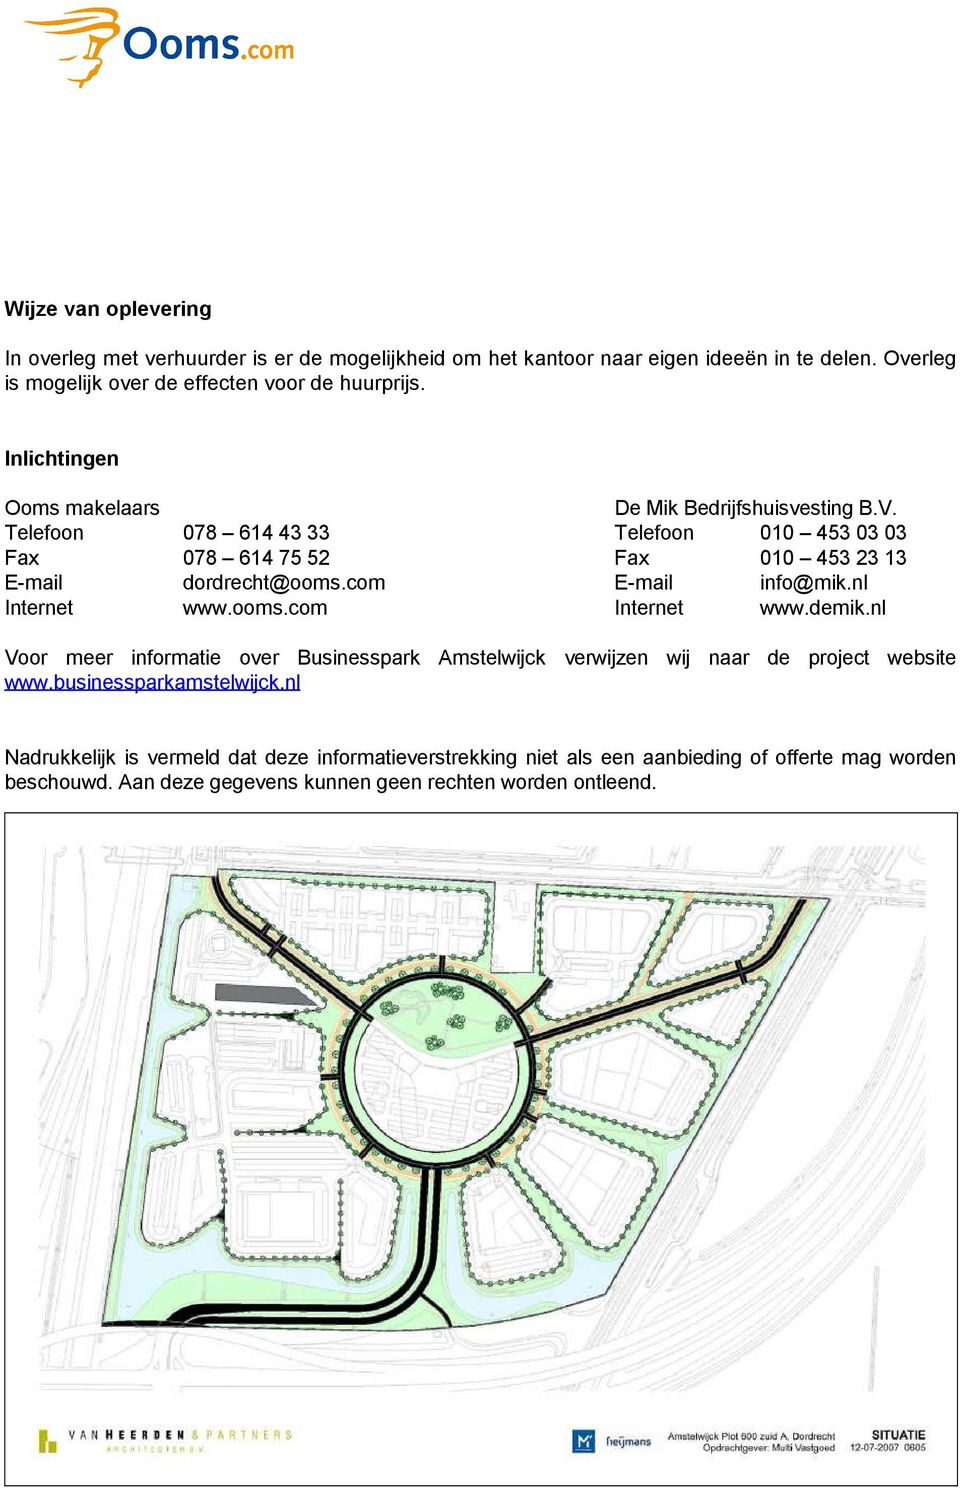 com E-mail info@mik.nl Internet www.ooms.com Internet www.demik.nl Voor meer informatie over Businesspark Amstelwijck verwijzen wij naar de project website www.